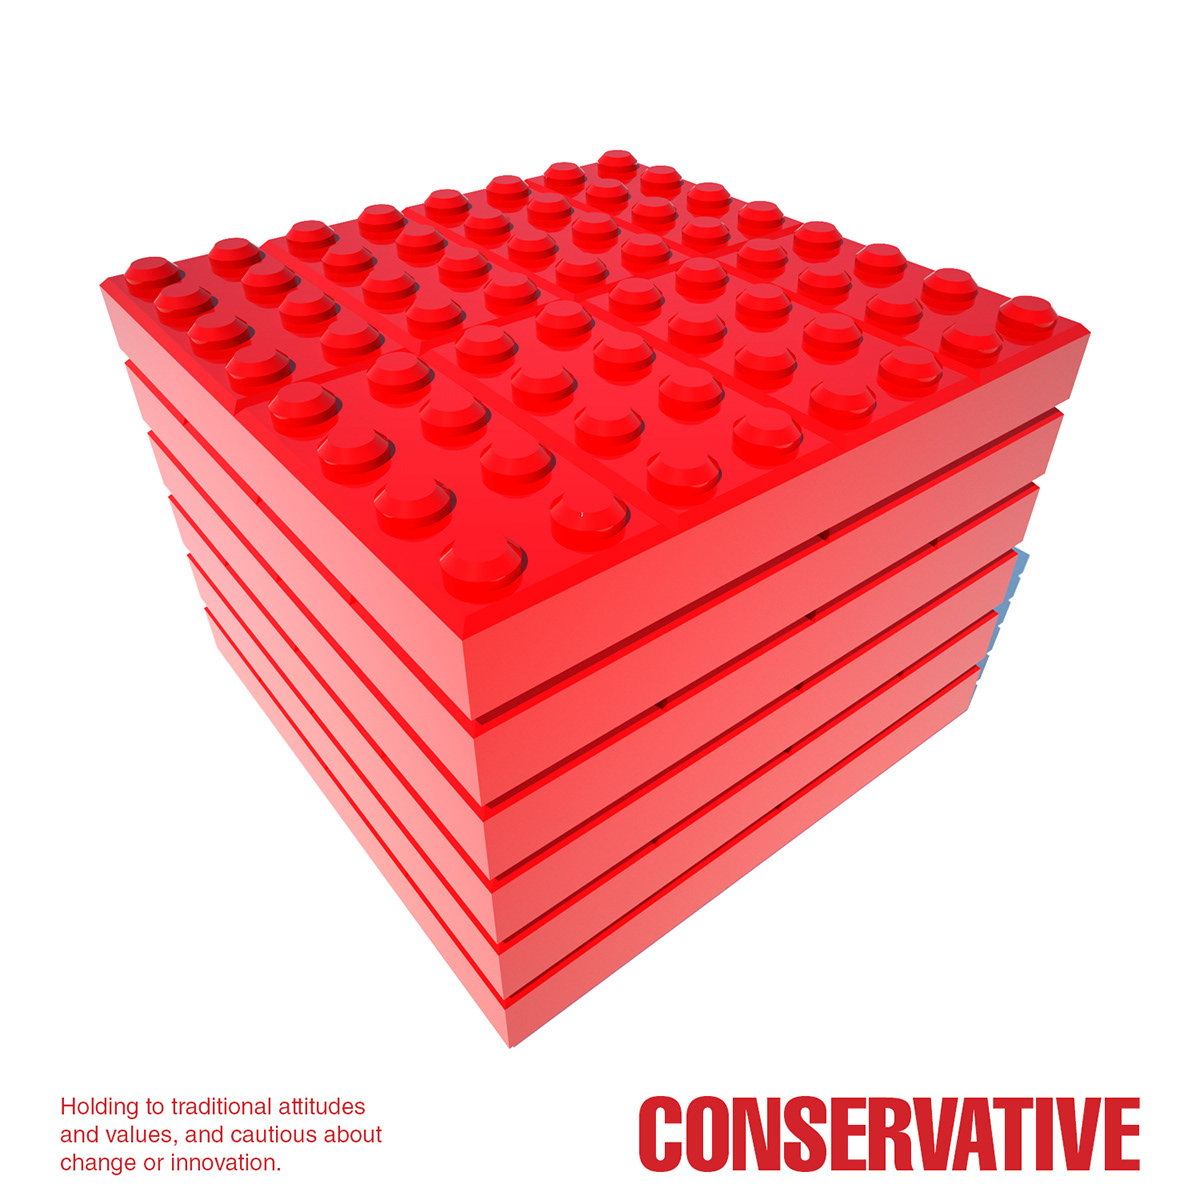 Quadtych Series 3d design 3D illustration Legos LEGO politics conservative LIBERAL